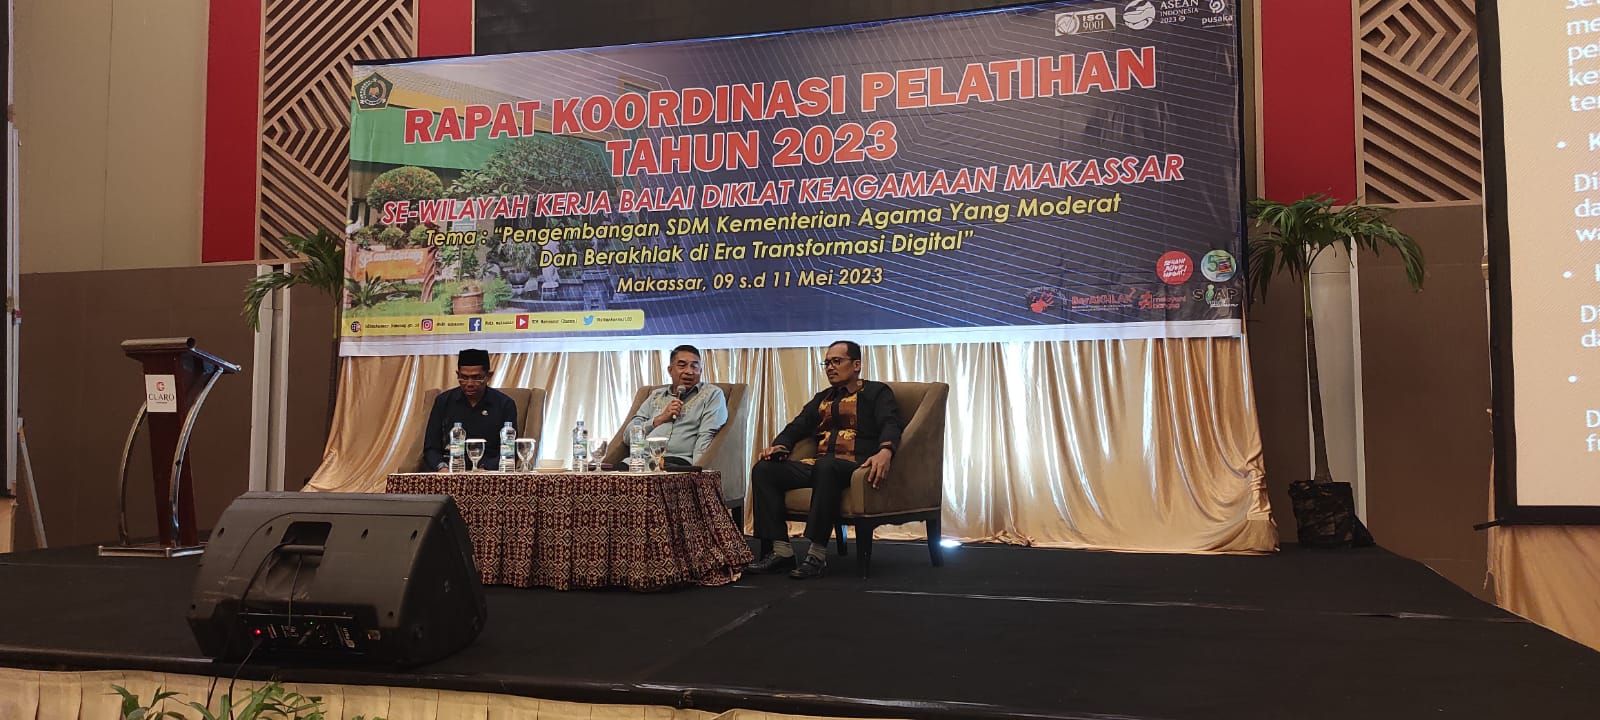 Kepala Kantor Wilayah Kementerian Agama Provinsi Sulawesi Selatan, Tenggara dan Barat memaparkan diskrepansi SDM Kemenag di wilayahnya masing-masing